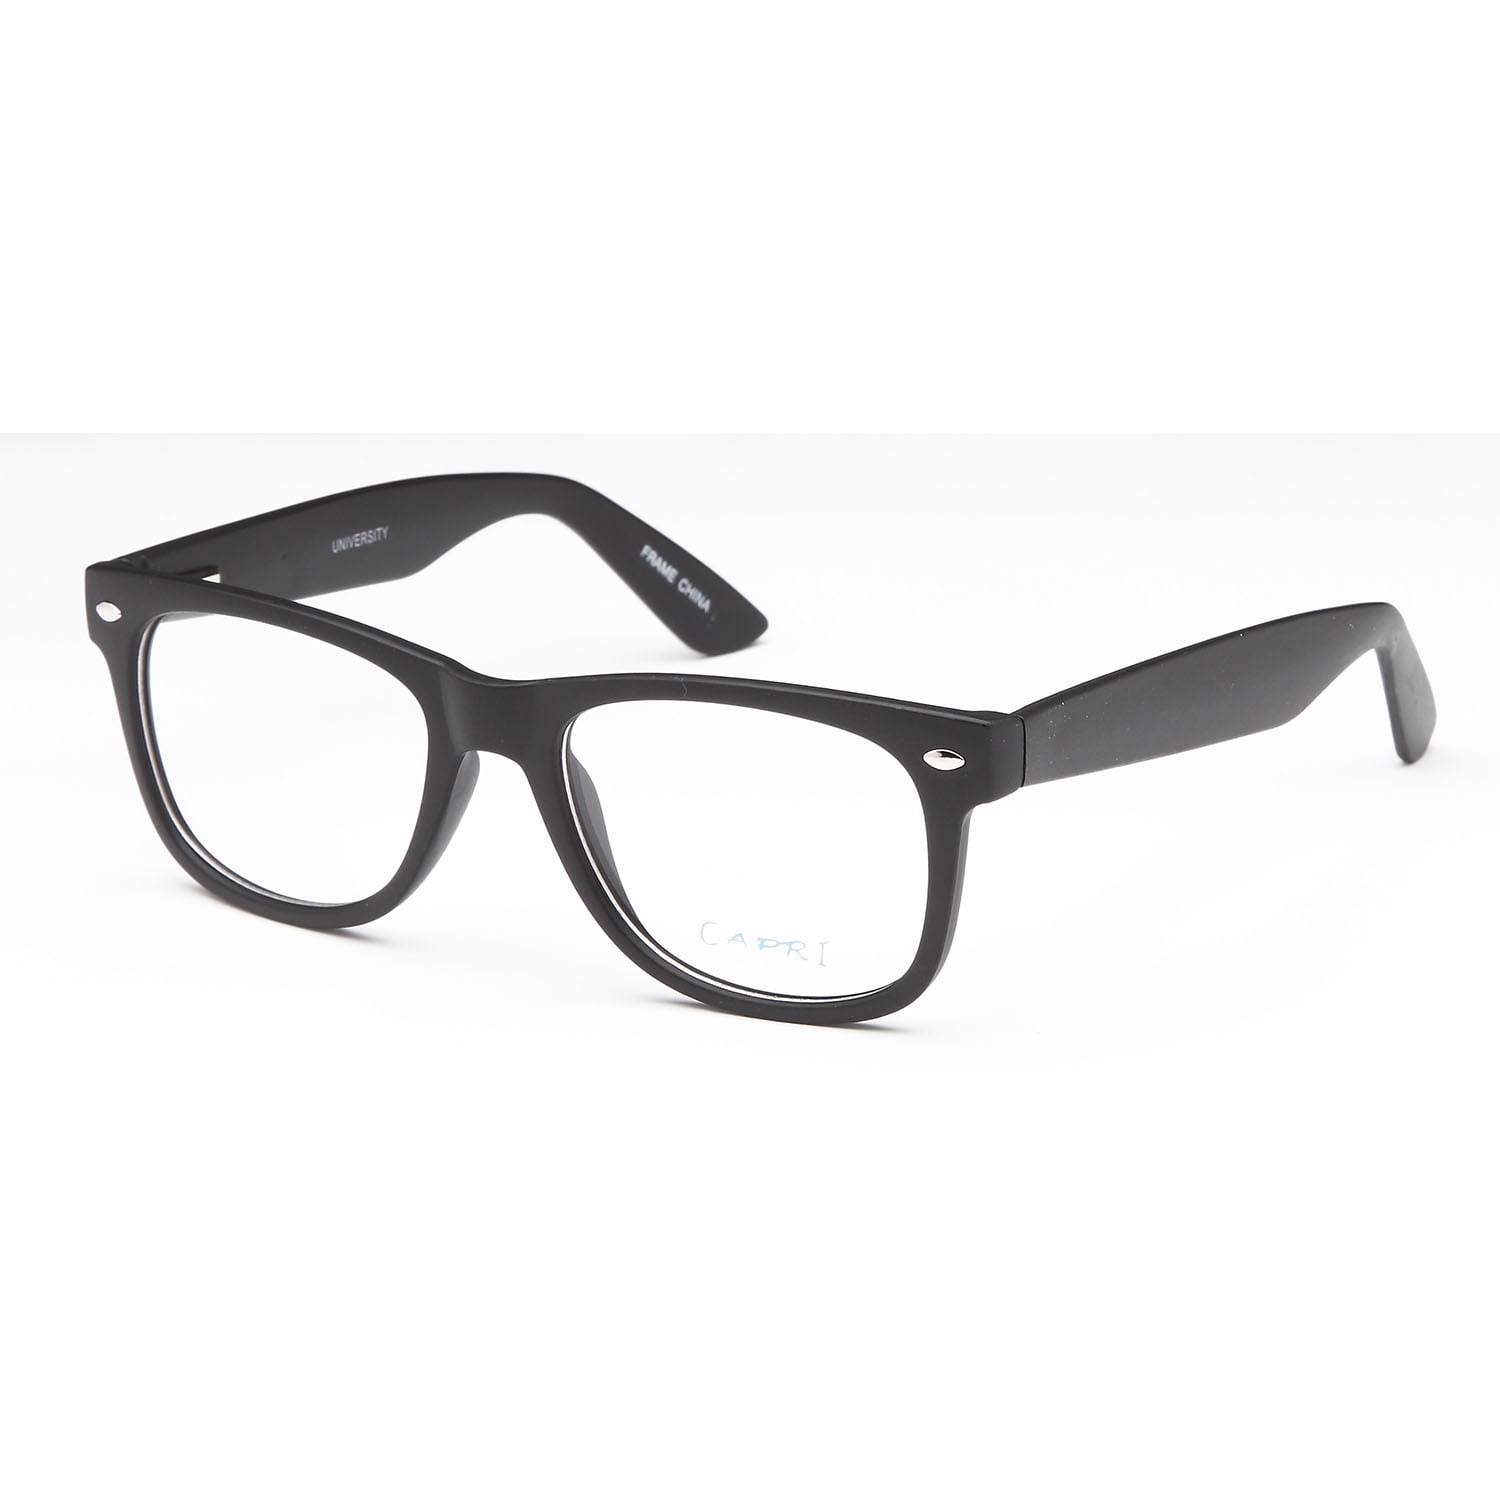 Unisex Eyeglasses 52 20 145 Black Plastic